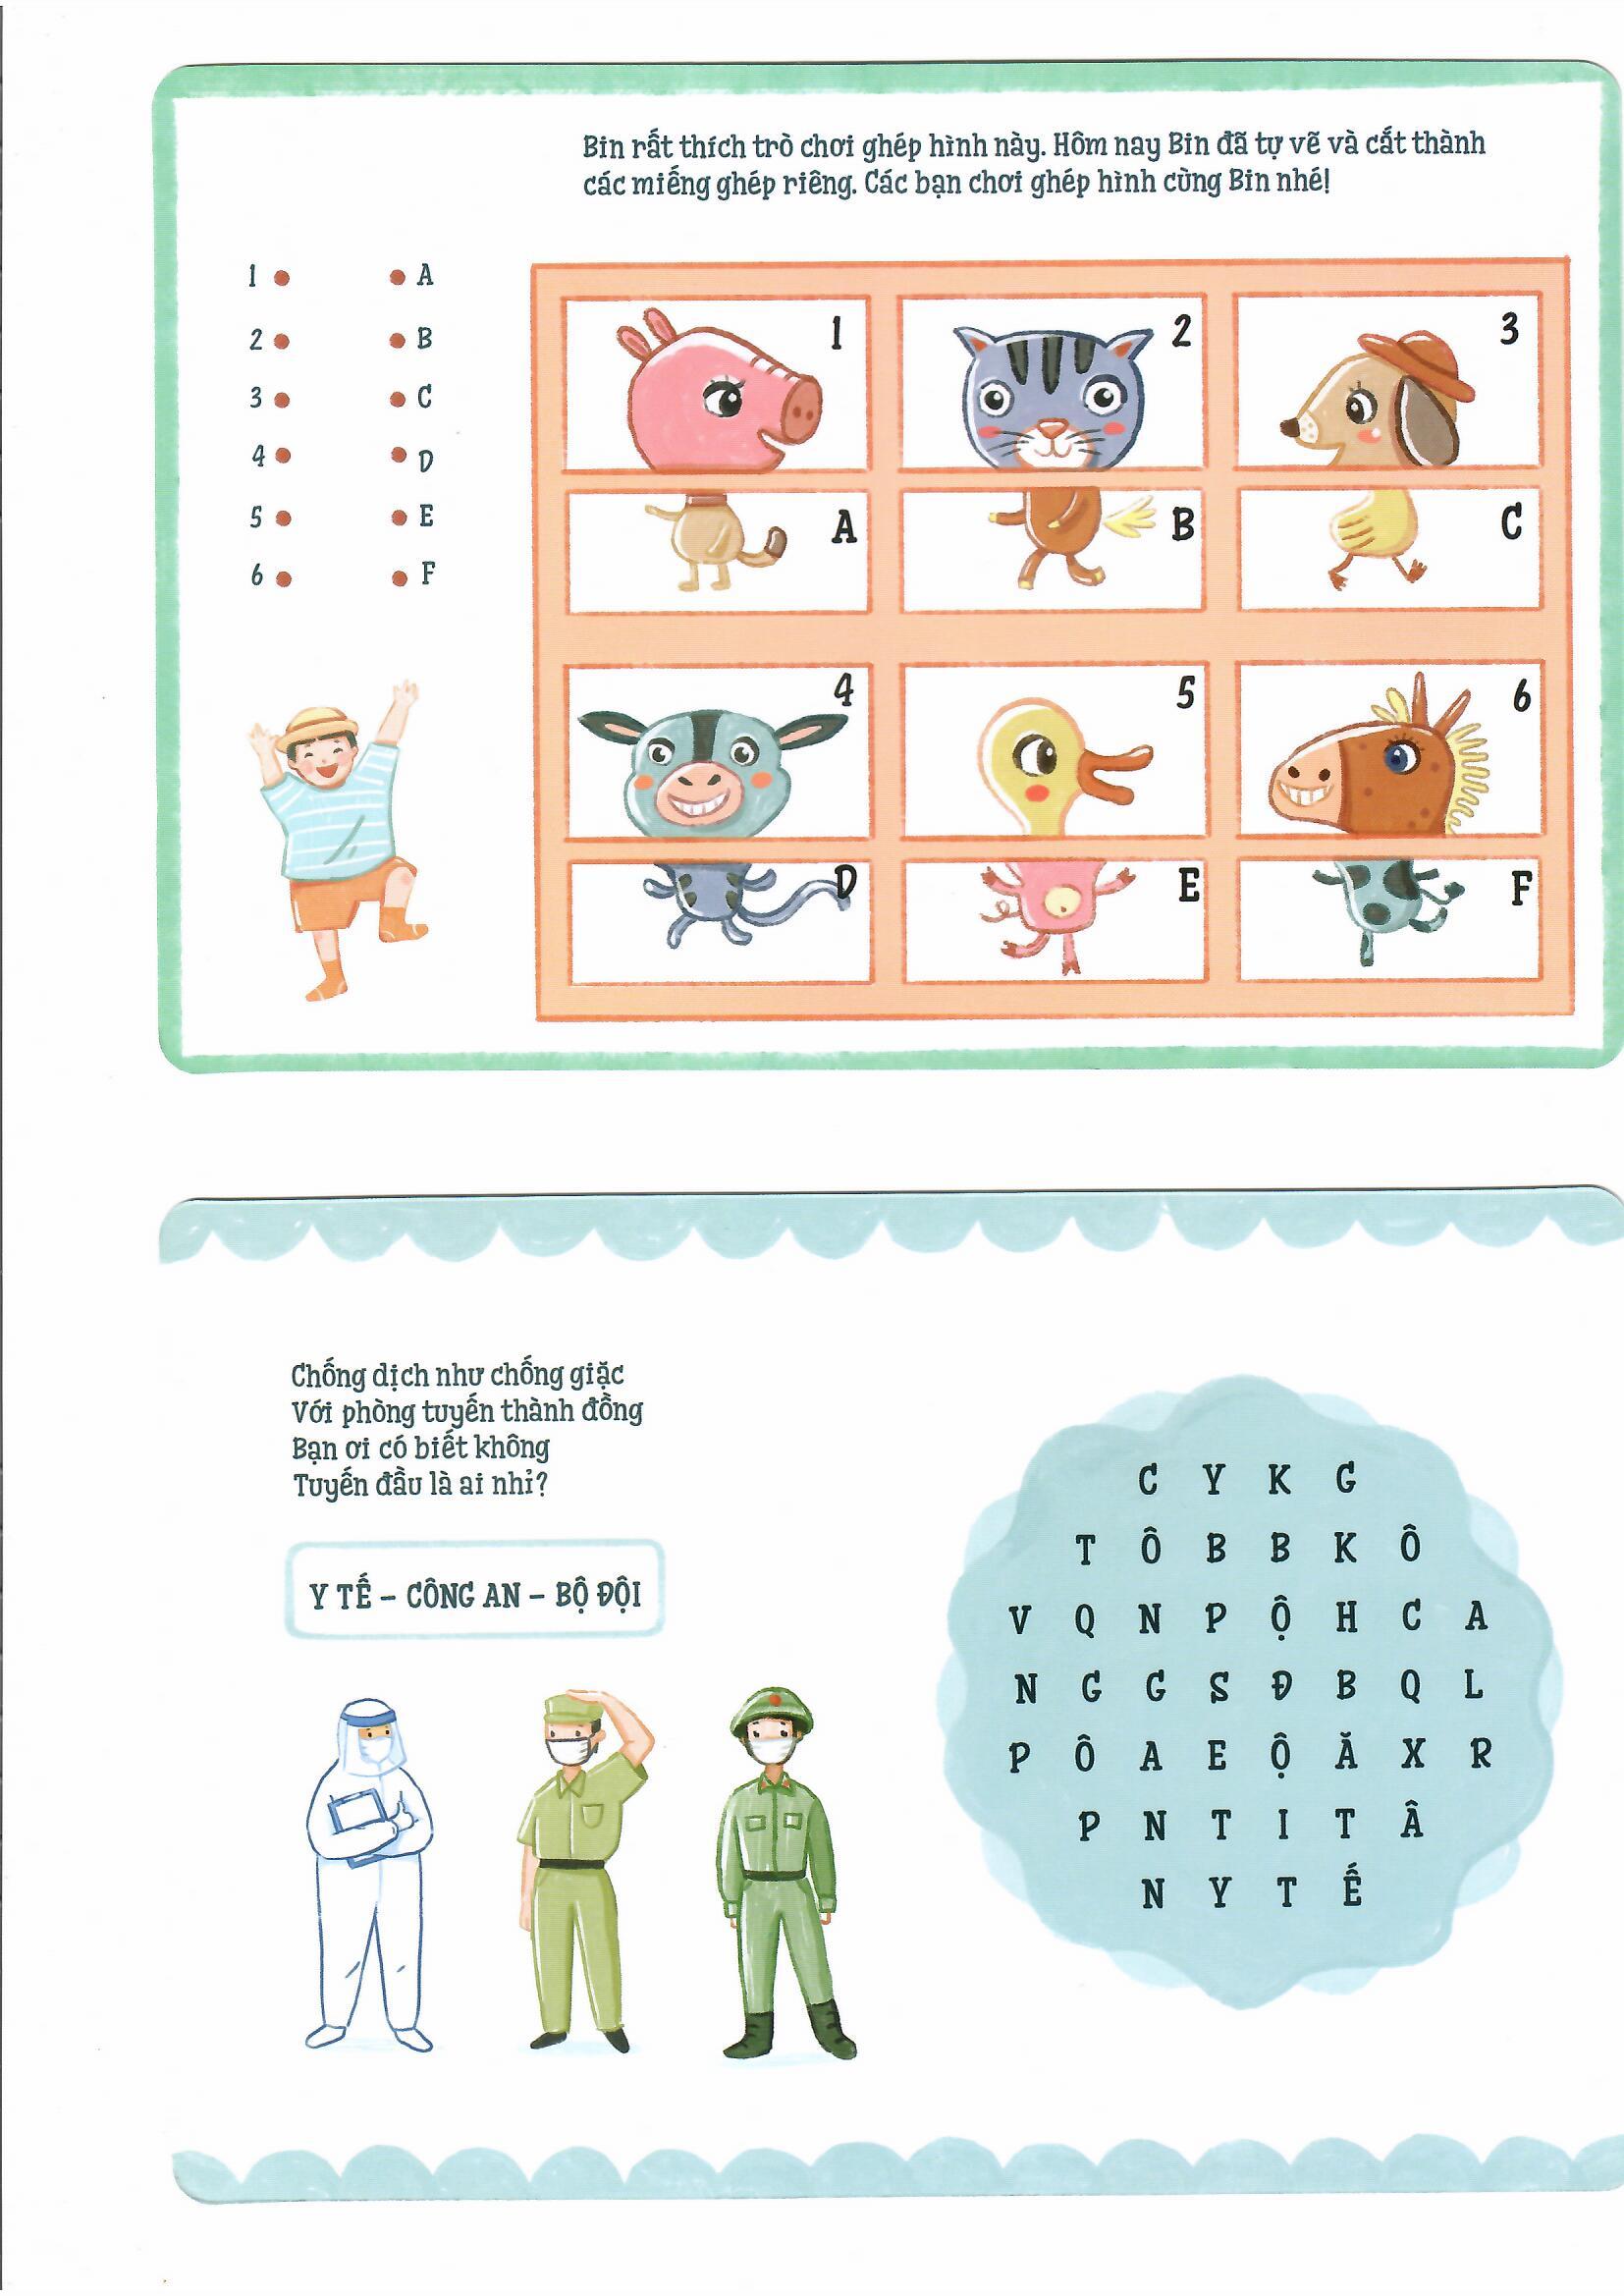 Thẻ trò chơi tư duy - Hộp biết ơn - Vững tin Việt Nam - Đồ chơi trí tuệ cho bé từ 5 tuổi